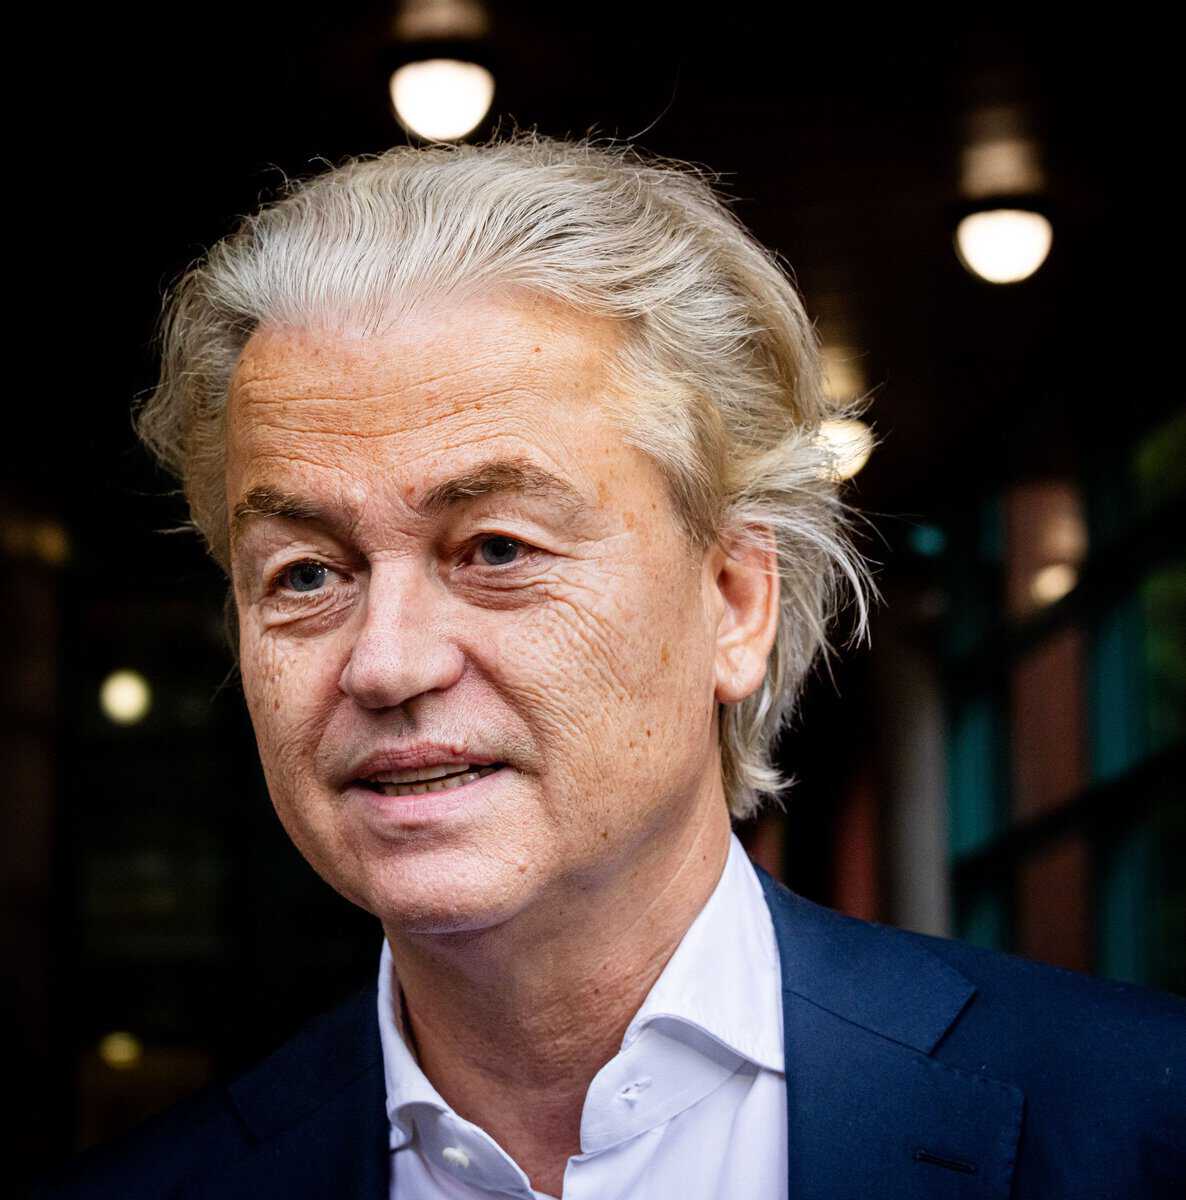 De Nederlandse politicus Geert Wilders trekt het plan in om de koran en moskeeën te verbieden